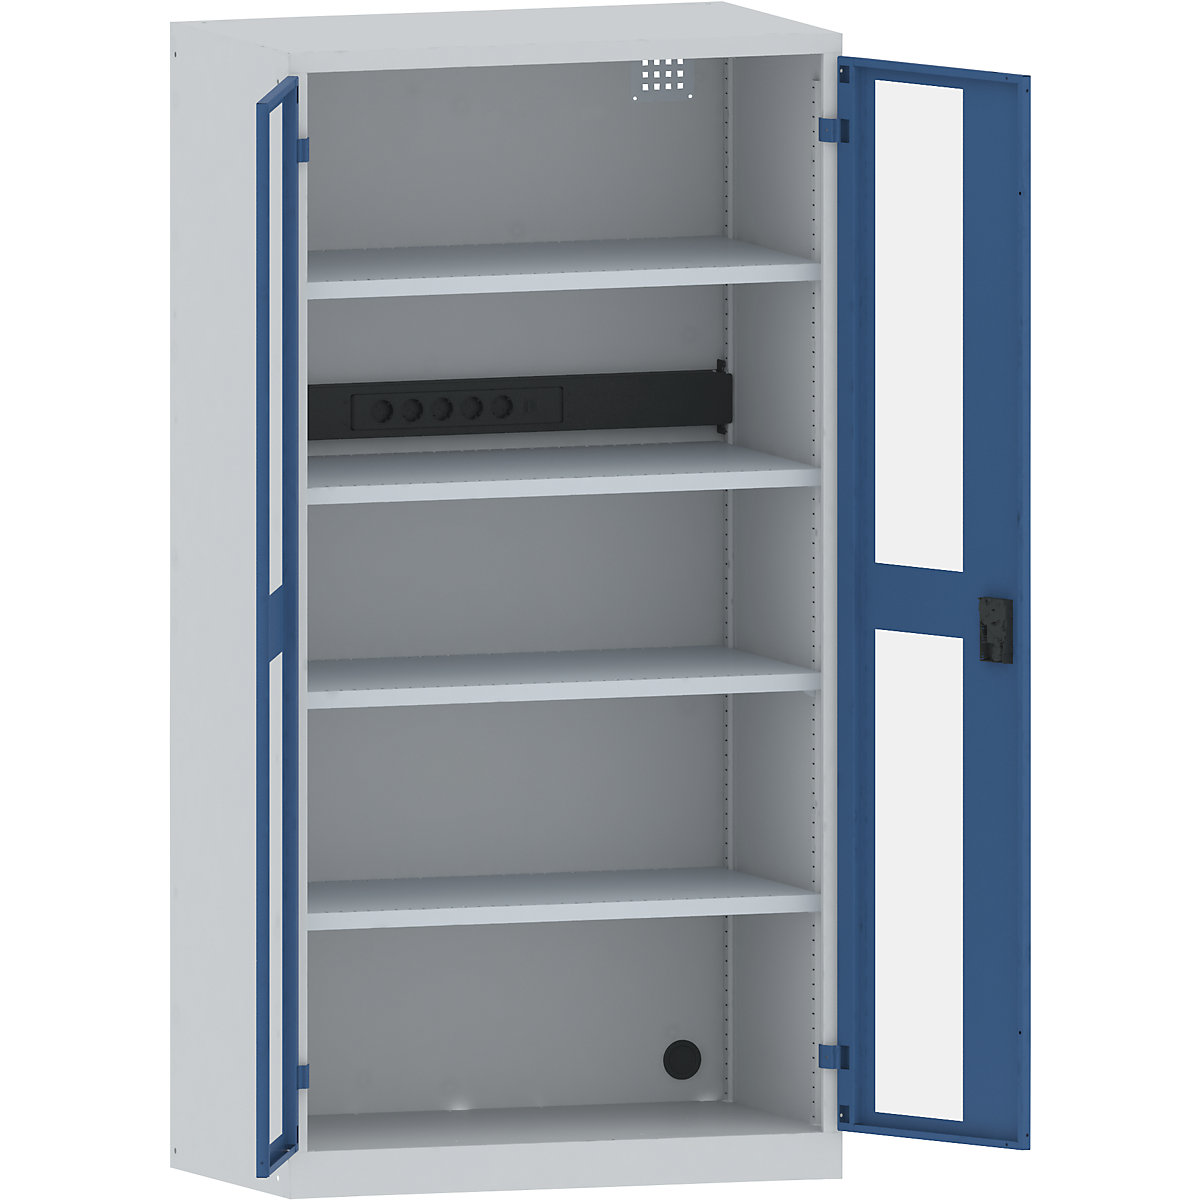 LISTA Akku-Ladeschrank, 4 Fachböden, Sichtfenstertüren, Energieleiste rückseitig, grau / blau